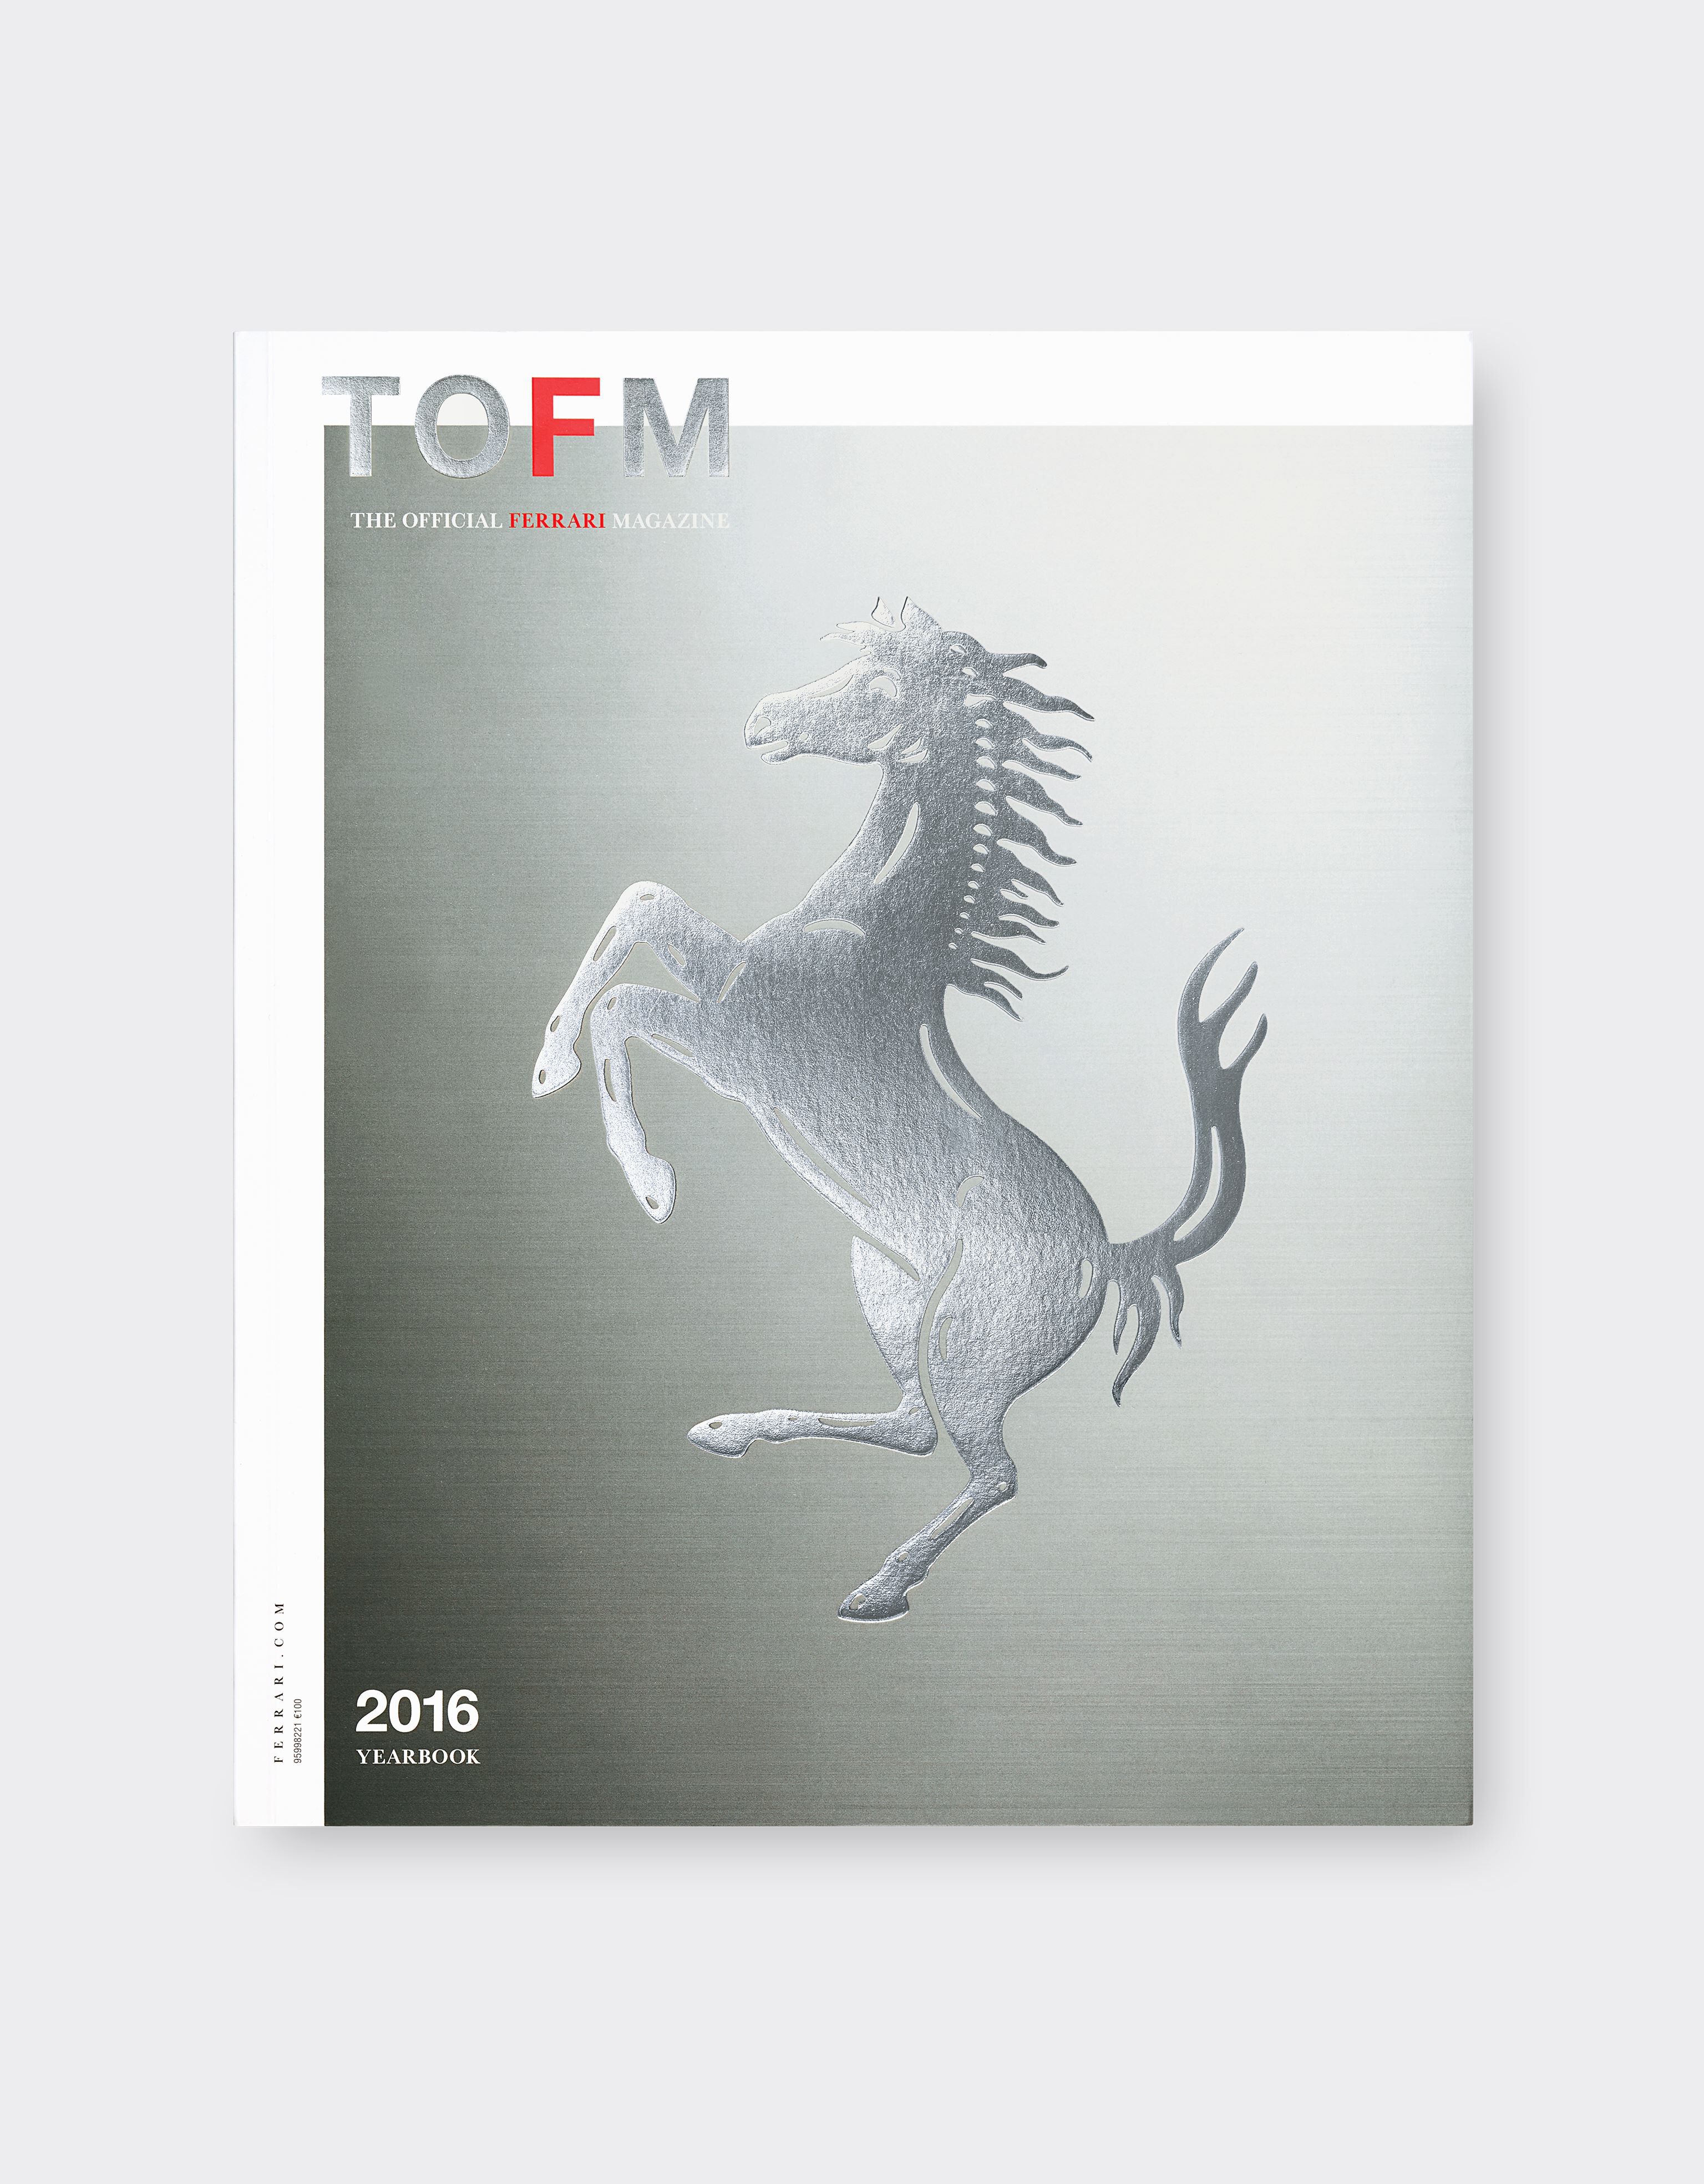 Ferrari The Official Ferrari Magazine issue 34 - 2016 Yearbook Black 47387f